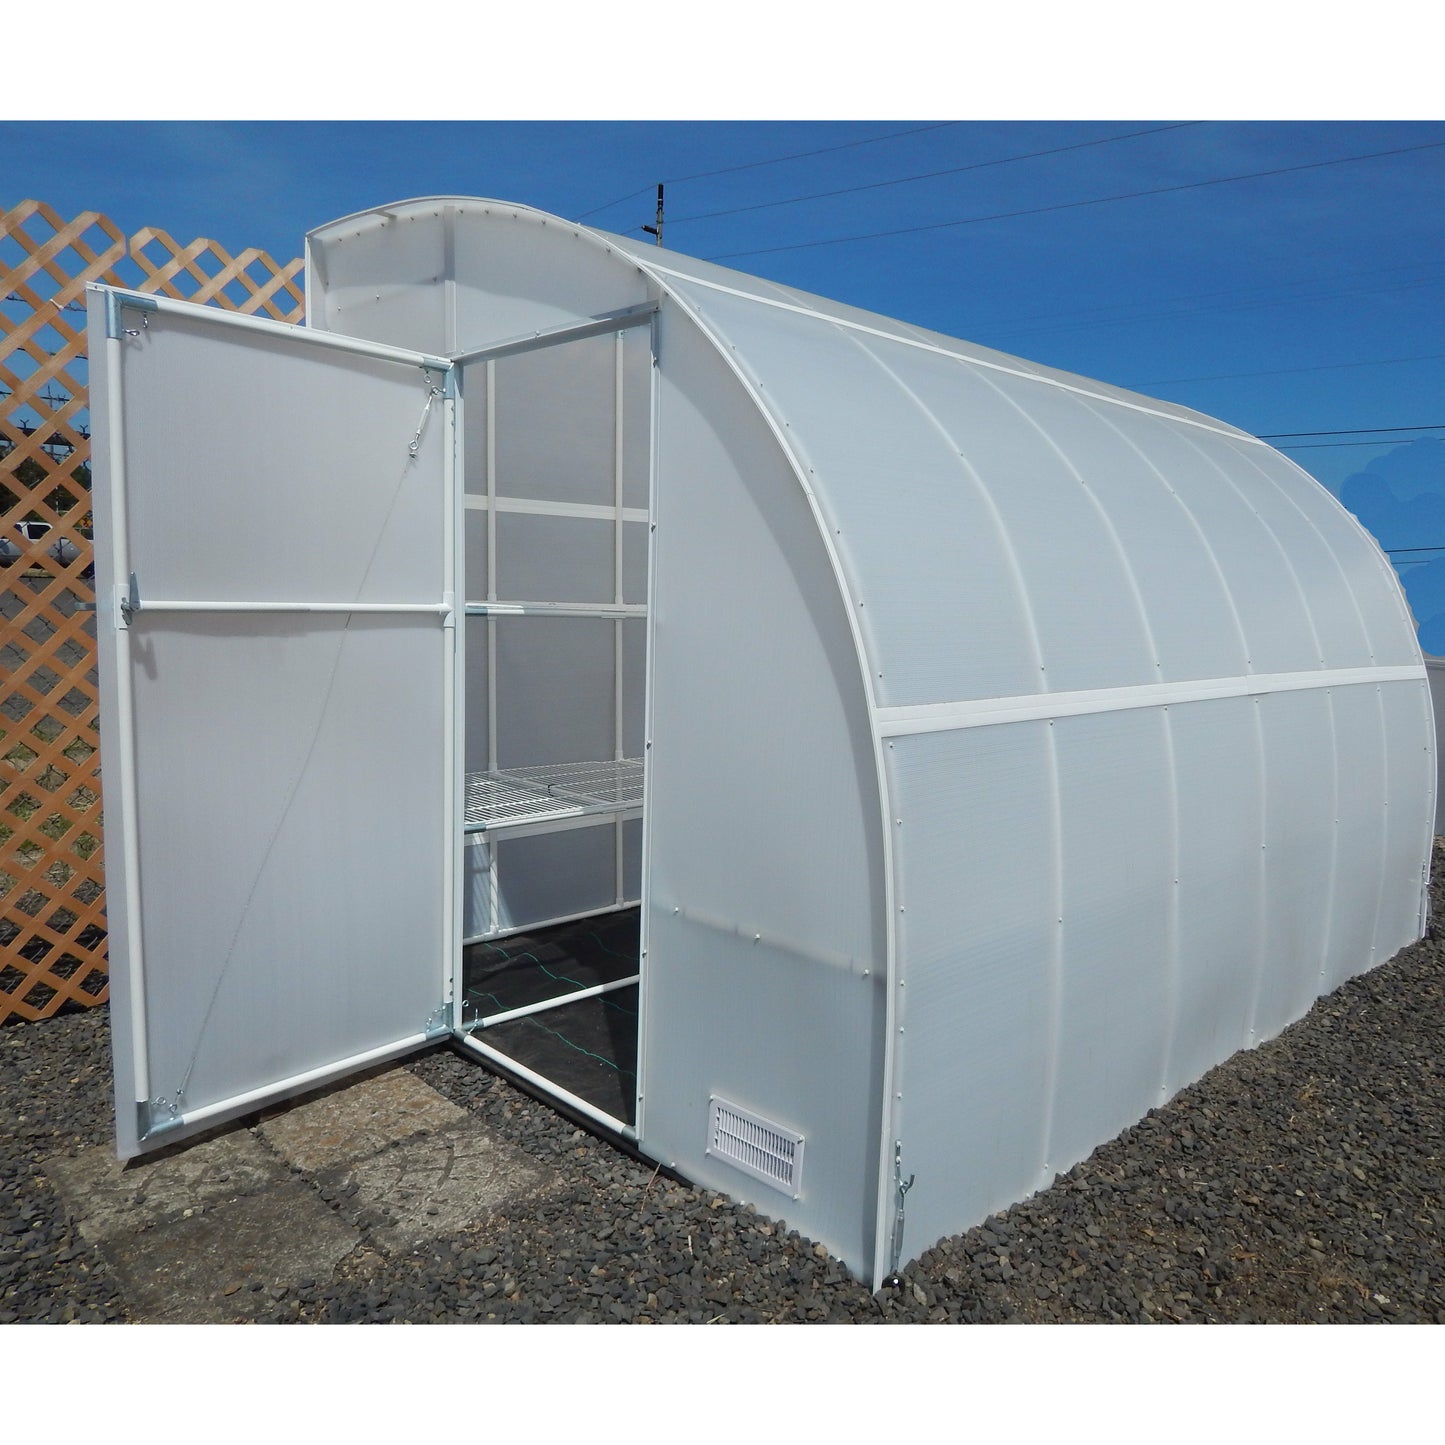 Solexx Harvester Greenhouse 8'W x 24'L x 8'H